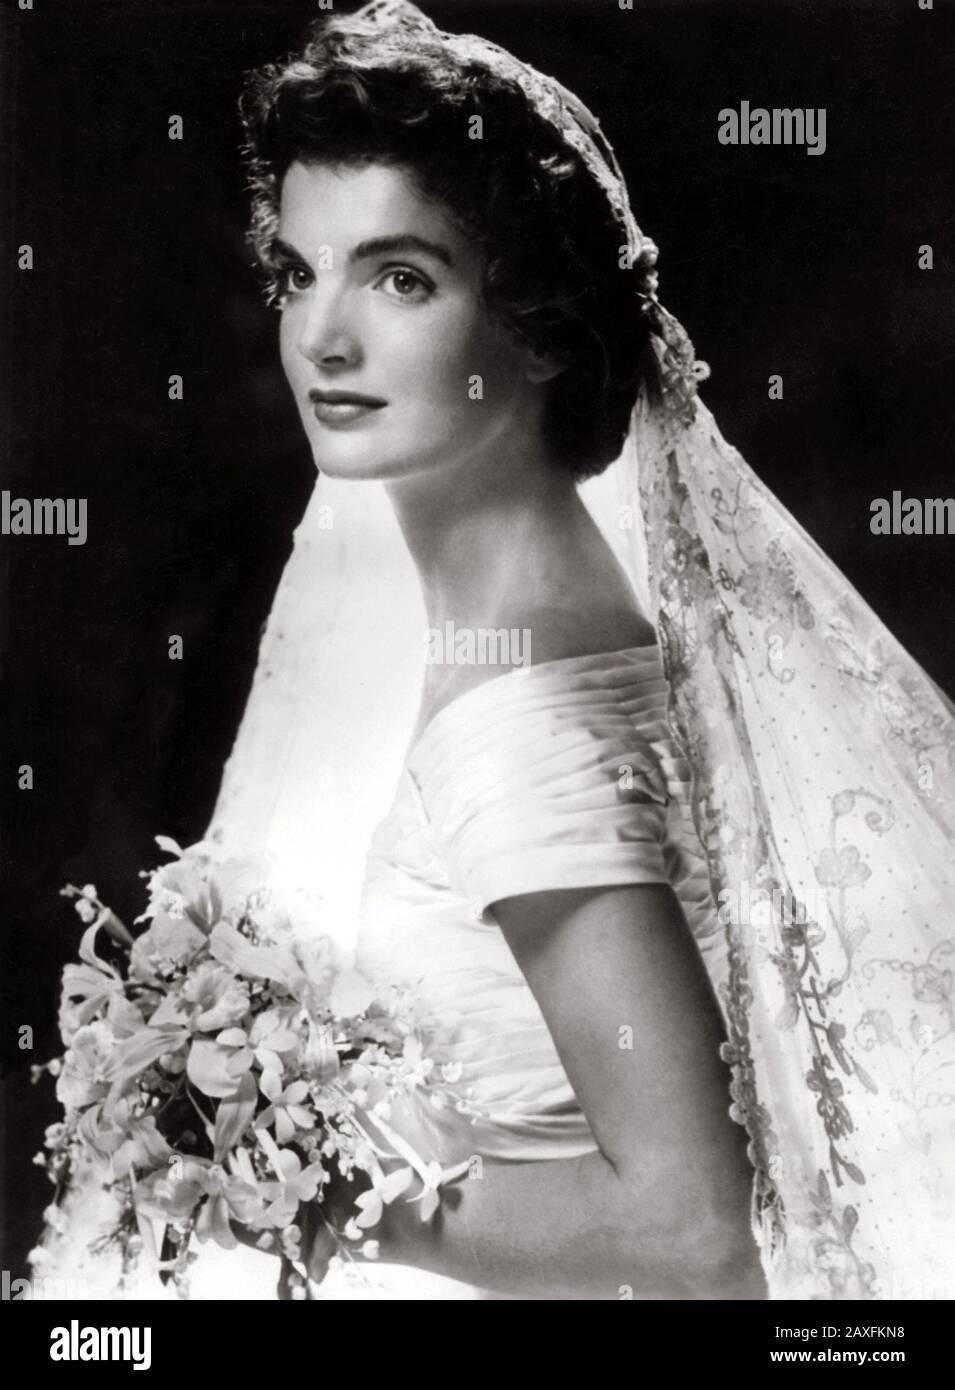 1953 , 12 september , Newport, Rhode Island, USA : Jacqueline Lee Bouvier ( 1929 - 1994 ) in bridal attire the day of marriage with the future american President JOHN Fitzgerald KENNEDY ( 1917 - 1963 ), Democratic senator for Massachusetts - SPOSA - velo - veil - pizzo - lace - collo - neck  - PRESIDENTE DEGLI STATI UNITI D' AMERICA - CASA BIANCA - WHITE HOUSE - POLITICO - POLITIC - POLITICIAN - POLITICA  - sposalizio - matrimonio - WEDDING DRESS - MARRIAGE - SPOSI -  bouquet - flowers - fiori -  abito da sposa - bridal dress  ---  Archivio GBB Stock Photo